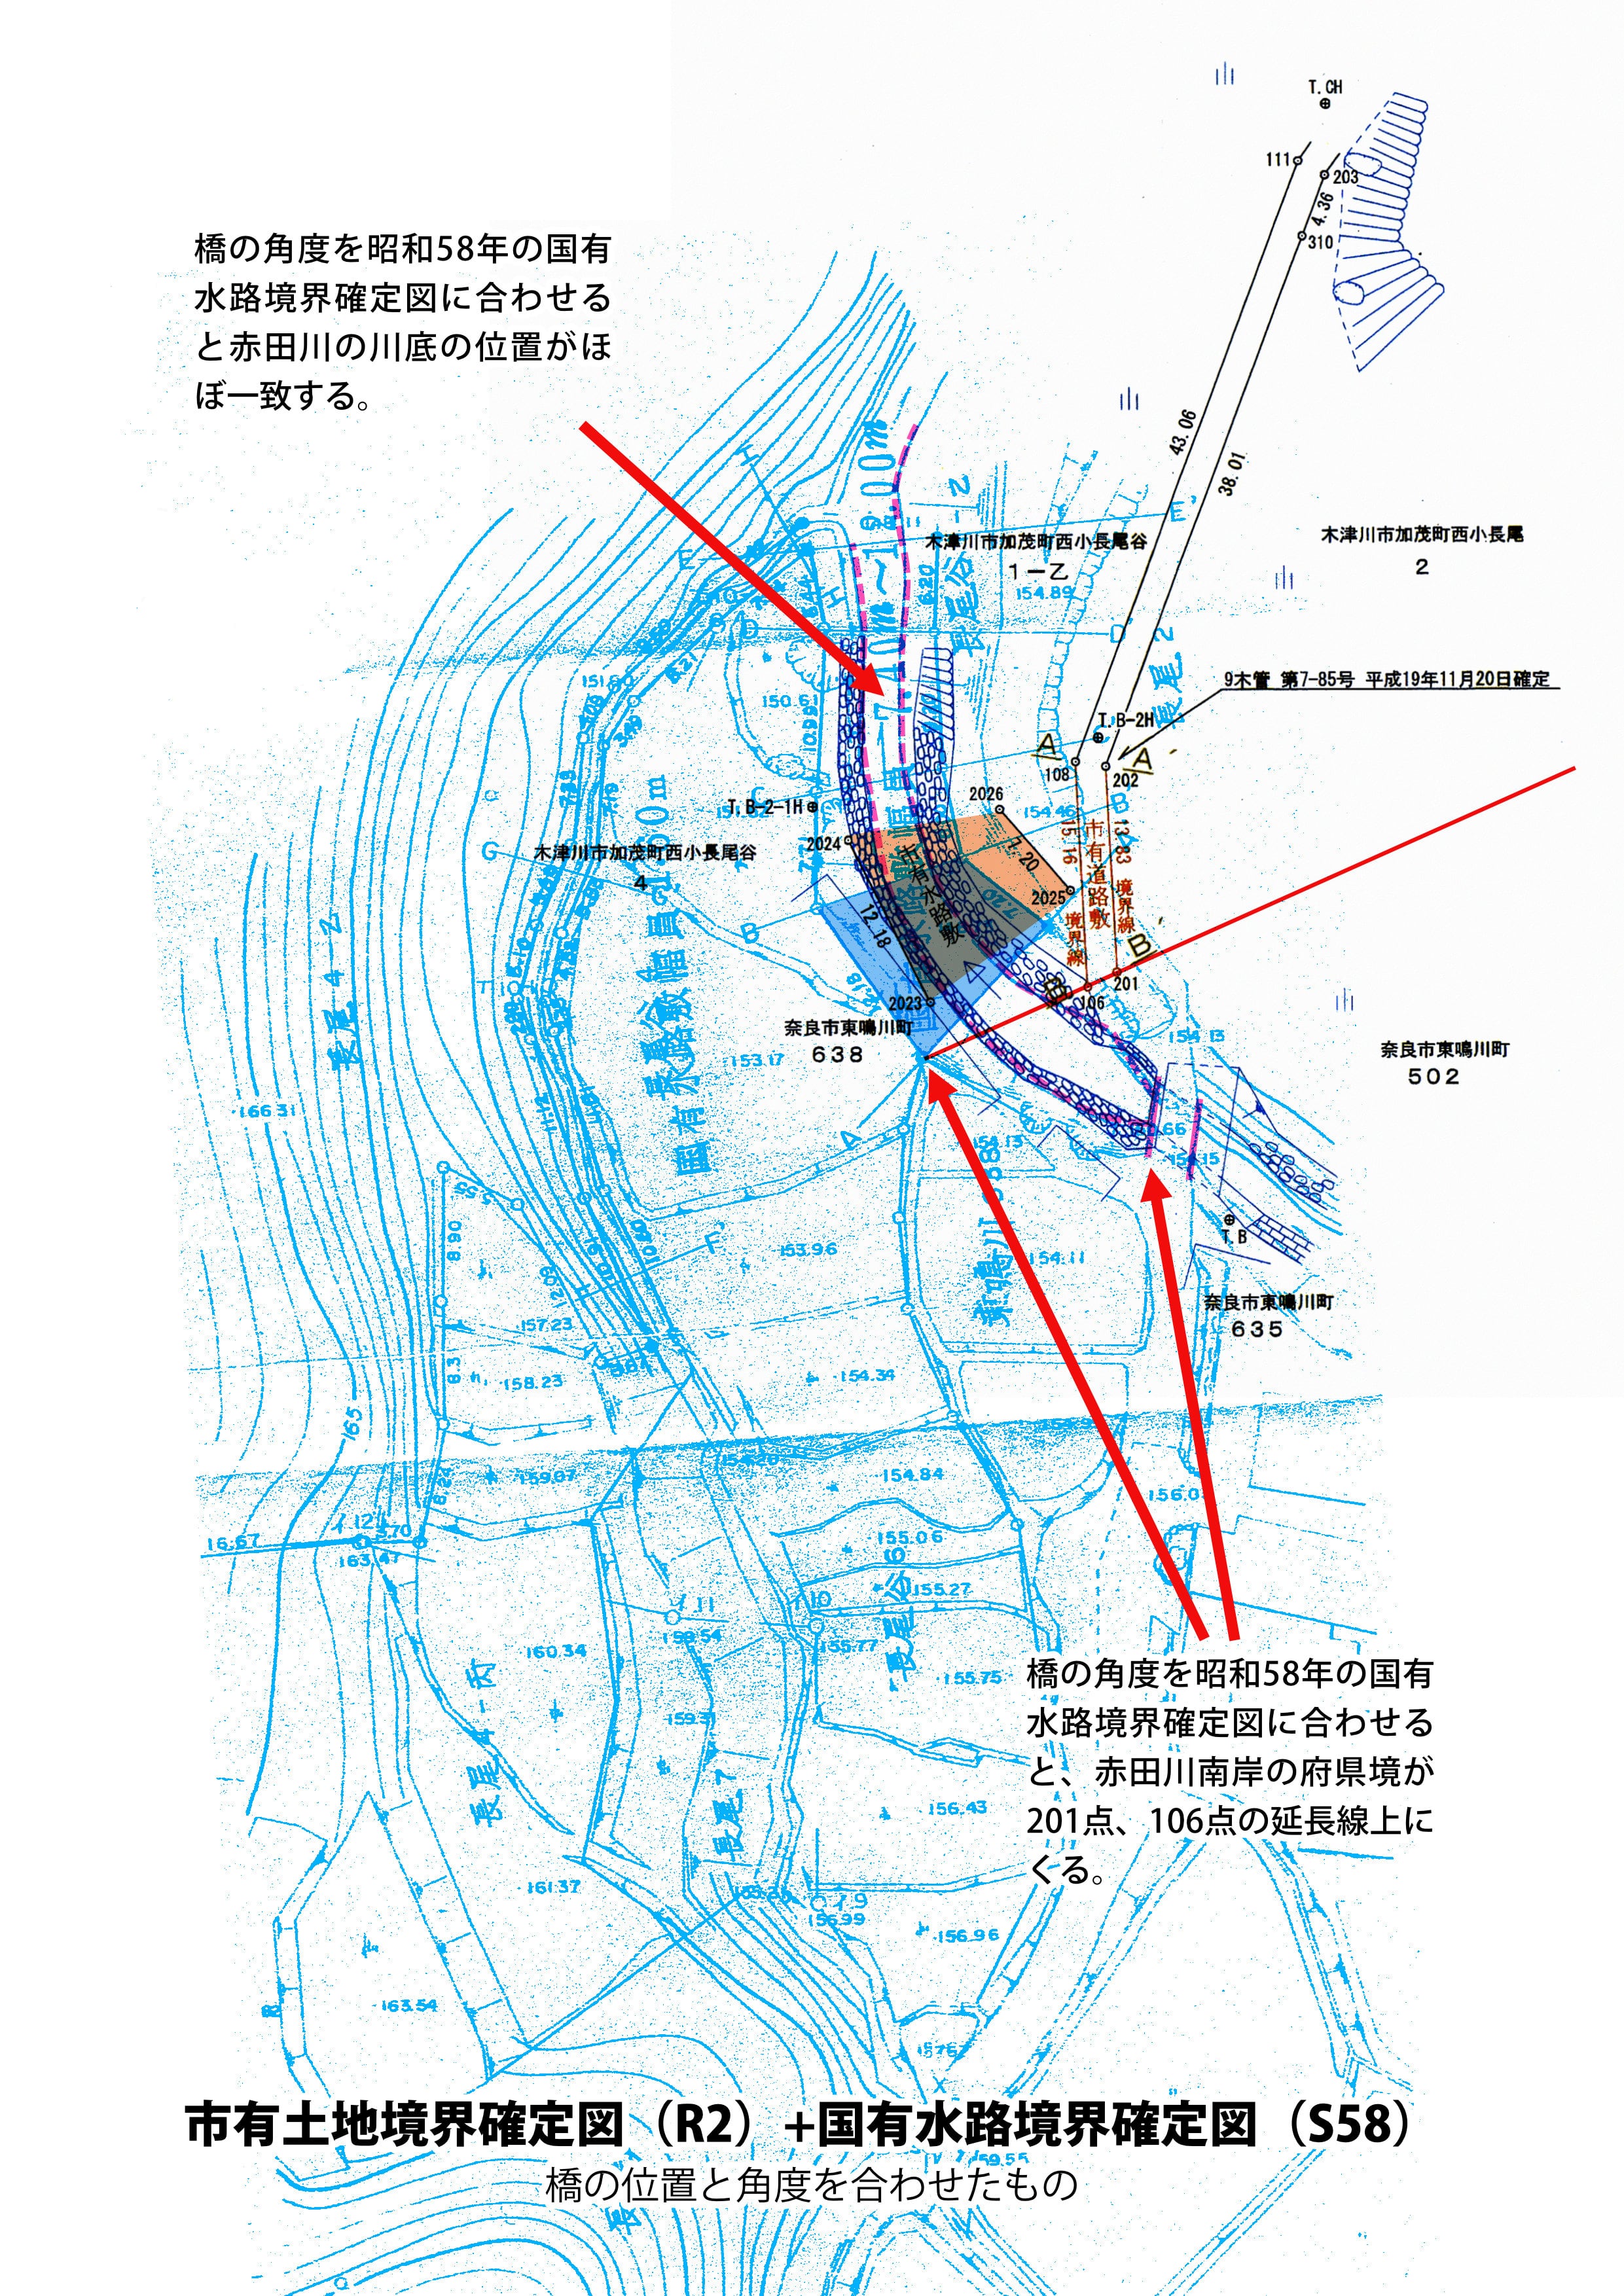 2020年2月の再確定図と1983年水路確定図の合成図（橋の位置と角度を合わせたもの）